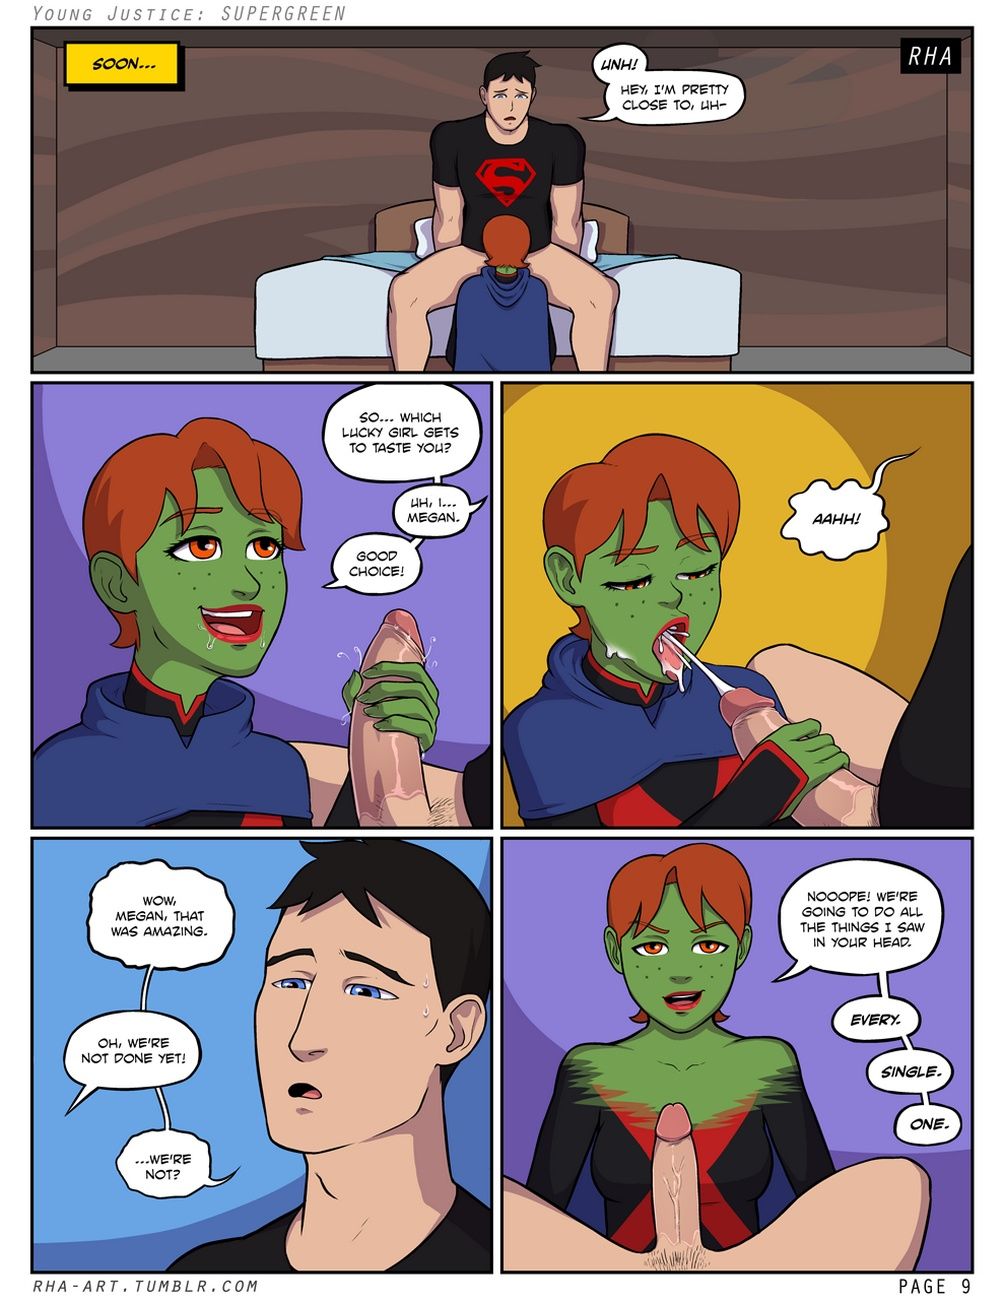 giovani giustizia supergreen page 1